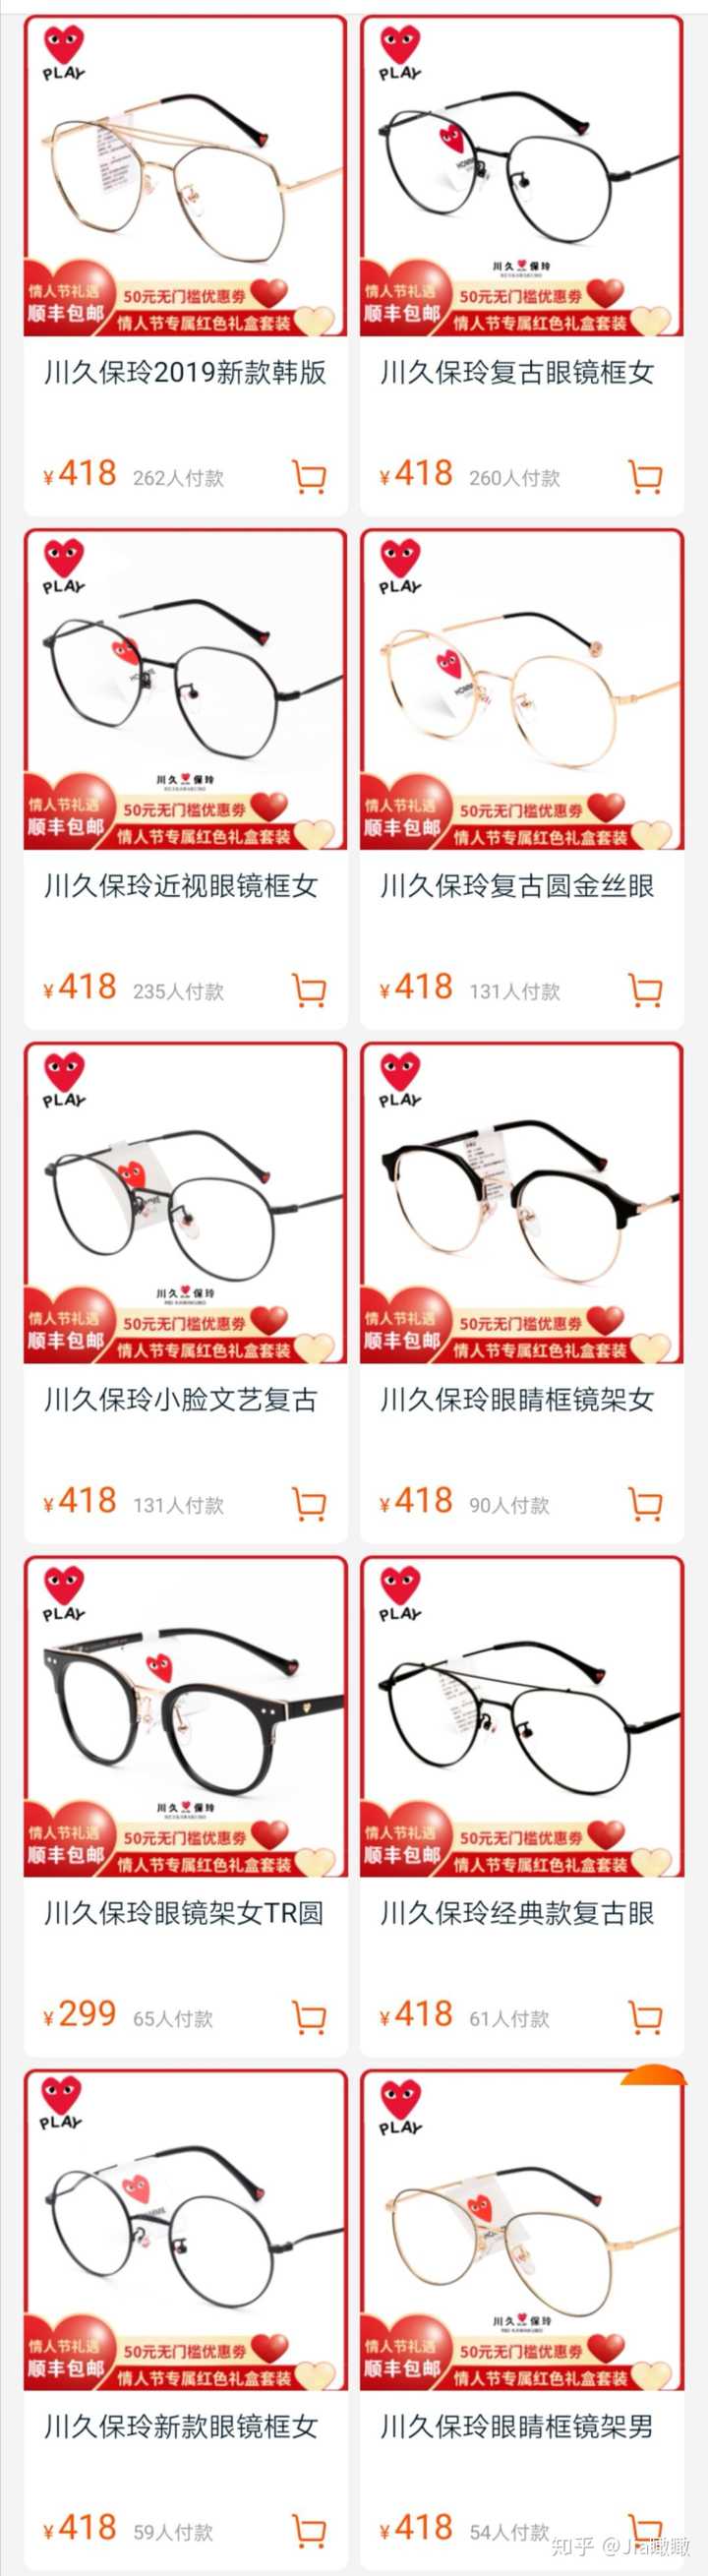 网上哪里有卖这个复古细眼镜框 哪个牌子好 然后怎么到实体店配眼镜片 知乎